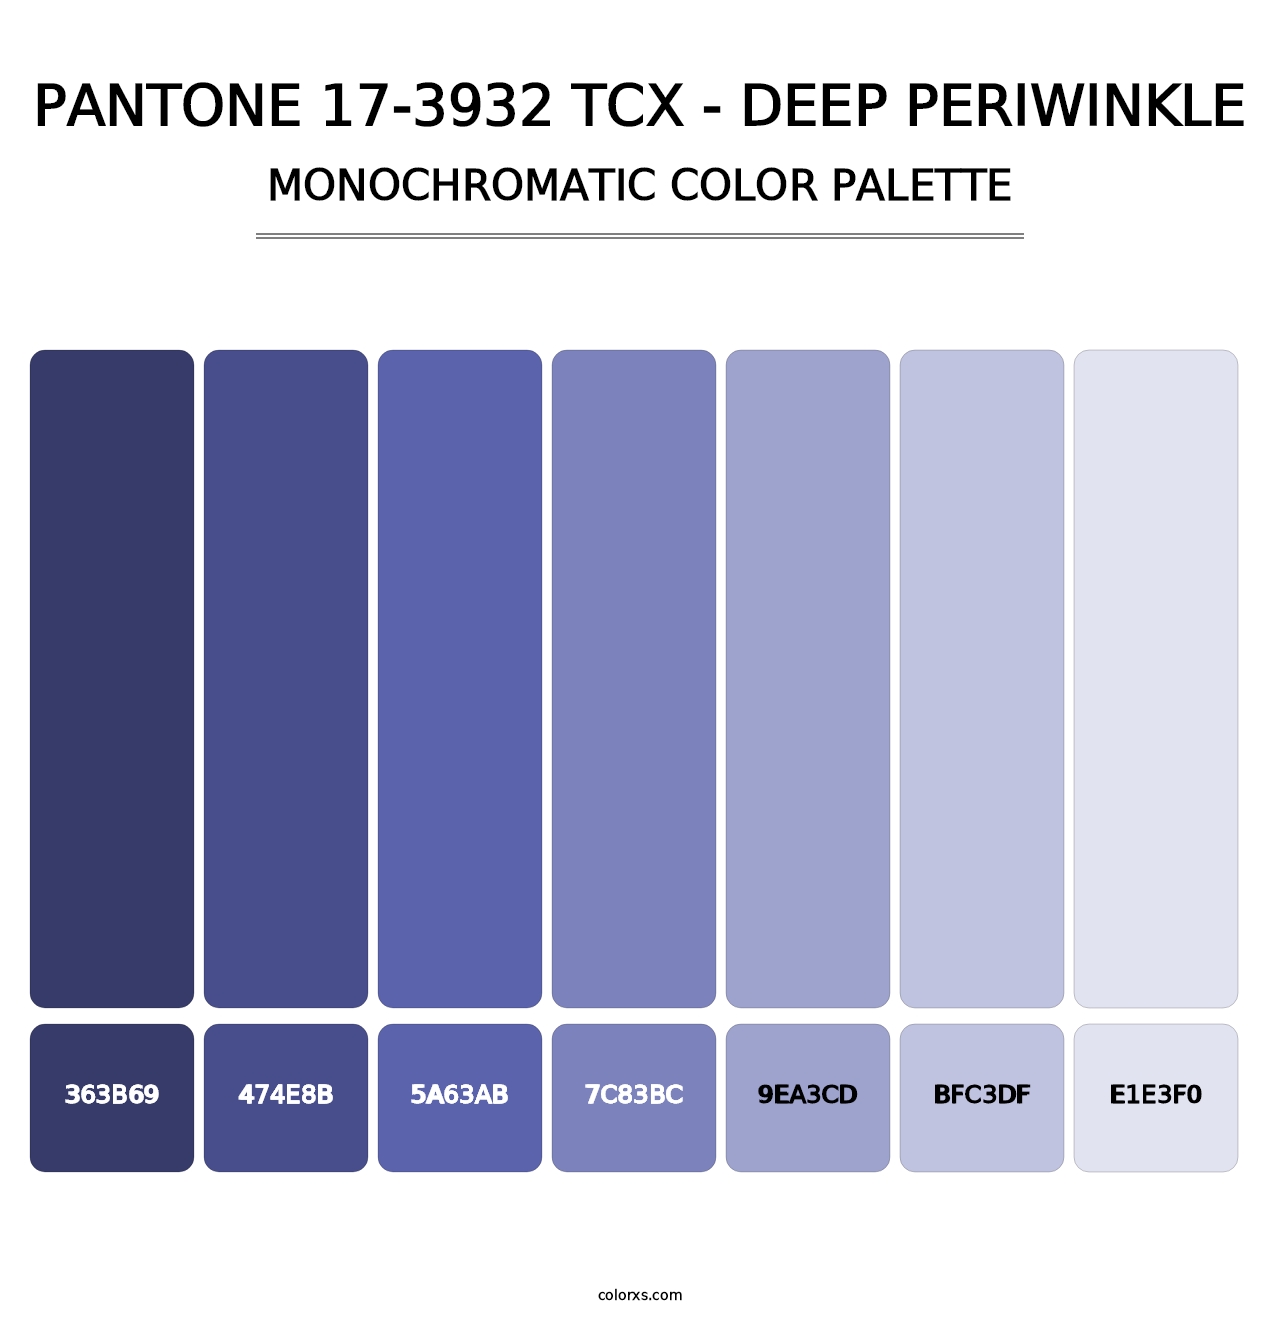 PANTONE 17-3932 TCX - Deep Periwinkle - Monochromatic Color Palette